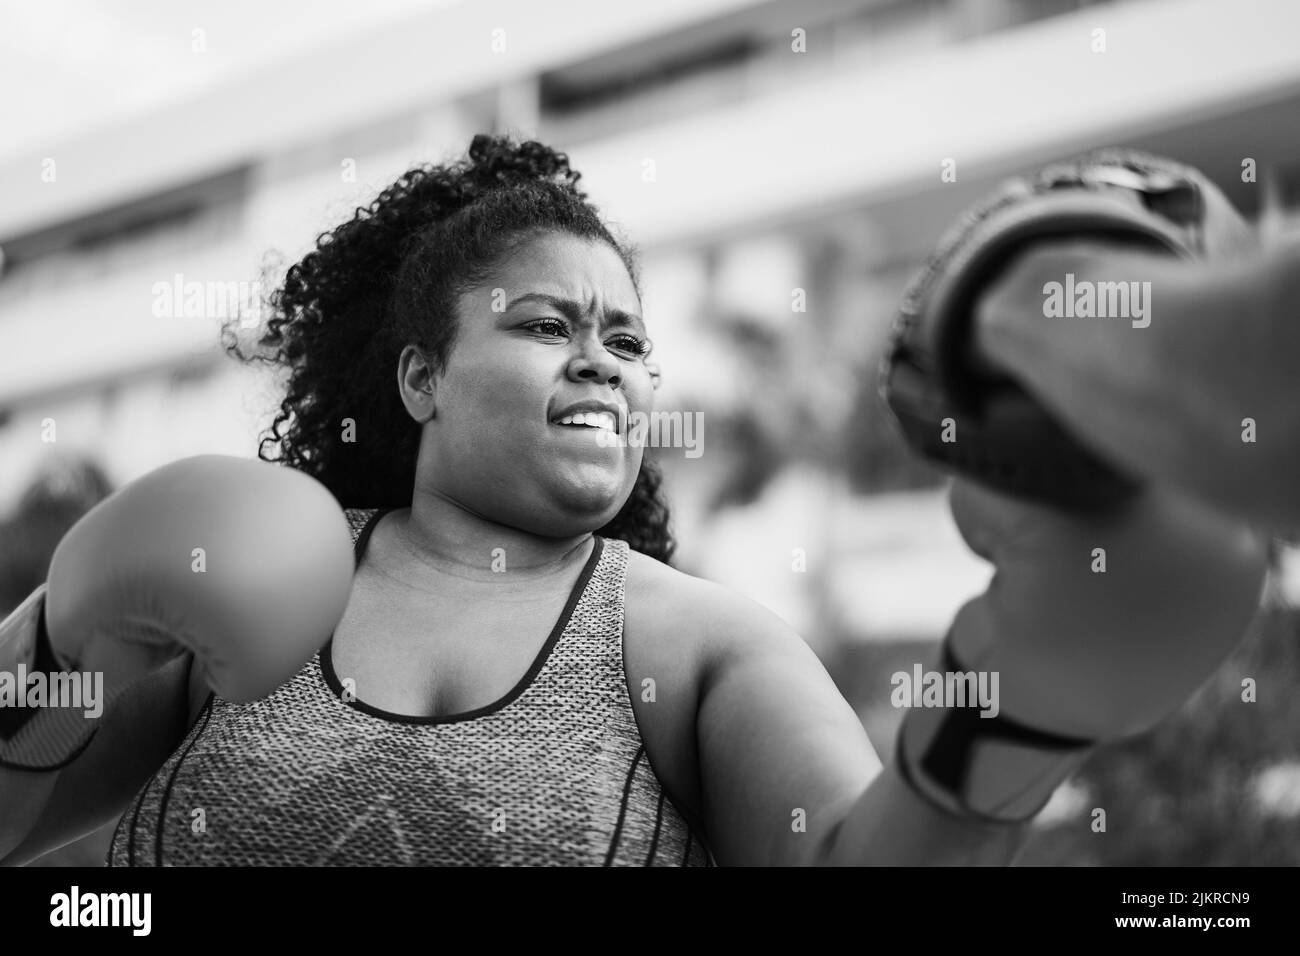 Femme africaine curvy et entraîneur personnel faisant la séance d'entraînement de boxe en extérieur - Focus sur le visage - montage noir et blanc Banque D'Images